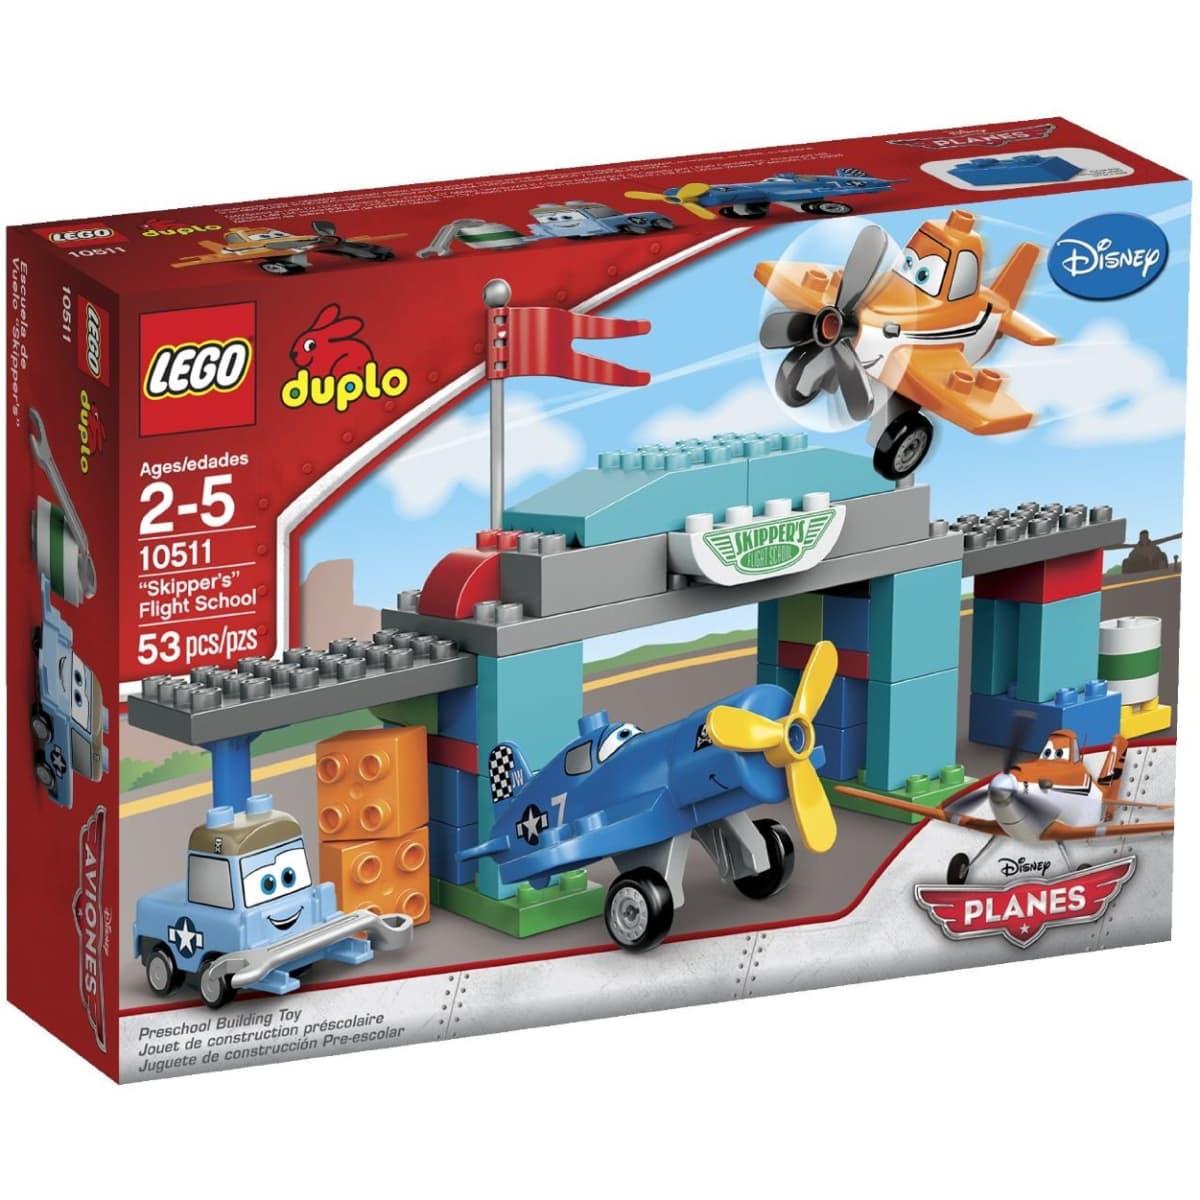 Lego Duplo Disney Planes Sets - HubPages